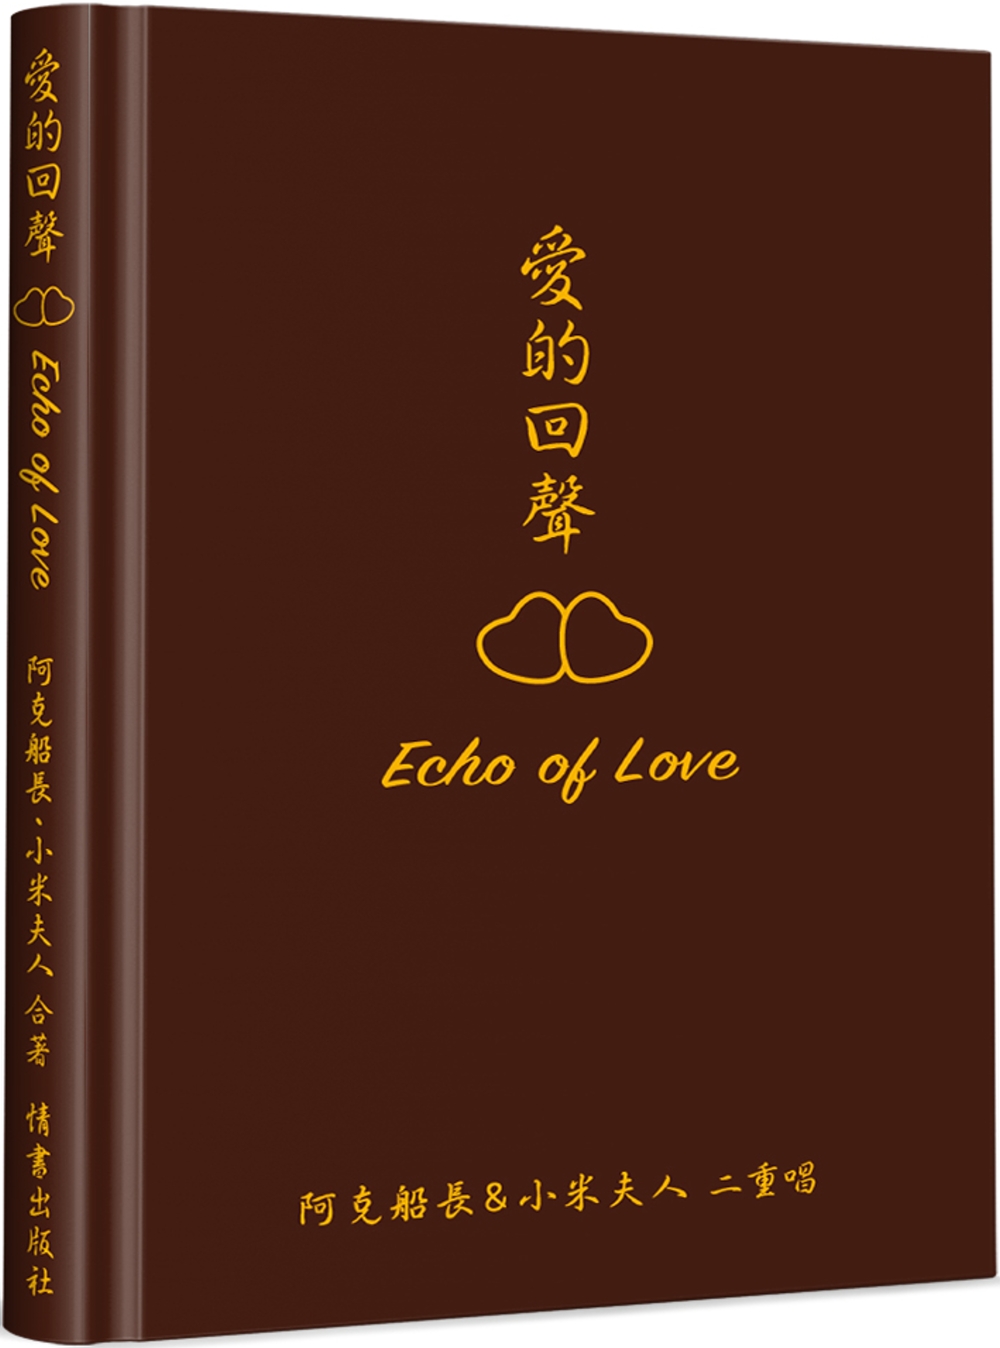 愛的回聲 Echo of Love(精裝)：阿克船長＆小米夫人二重唱